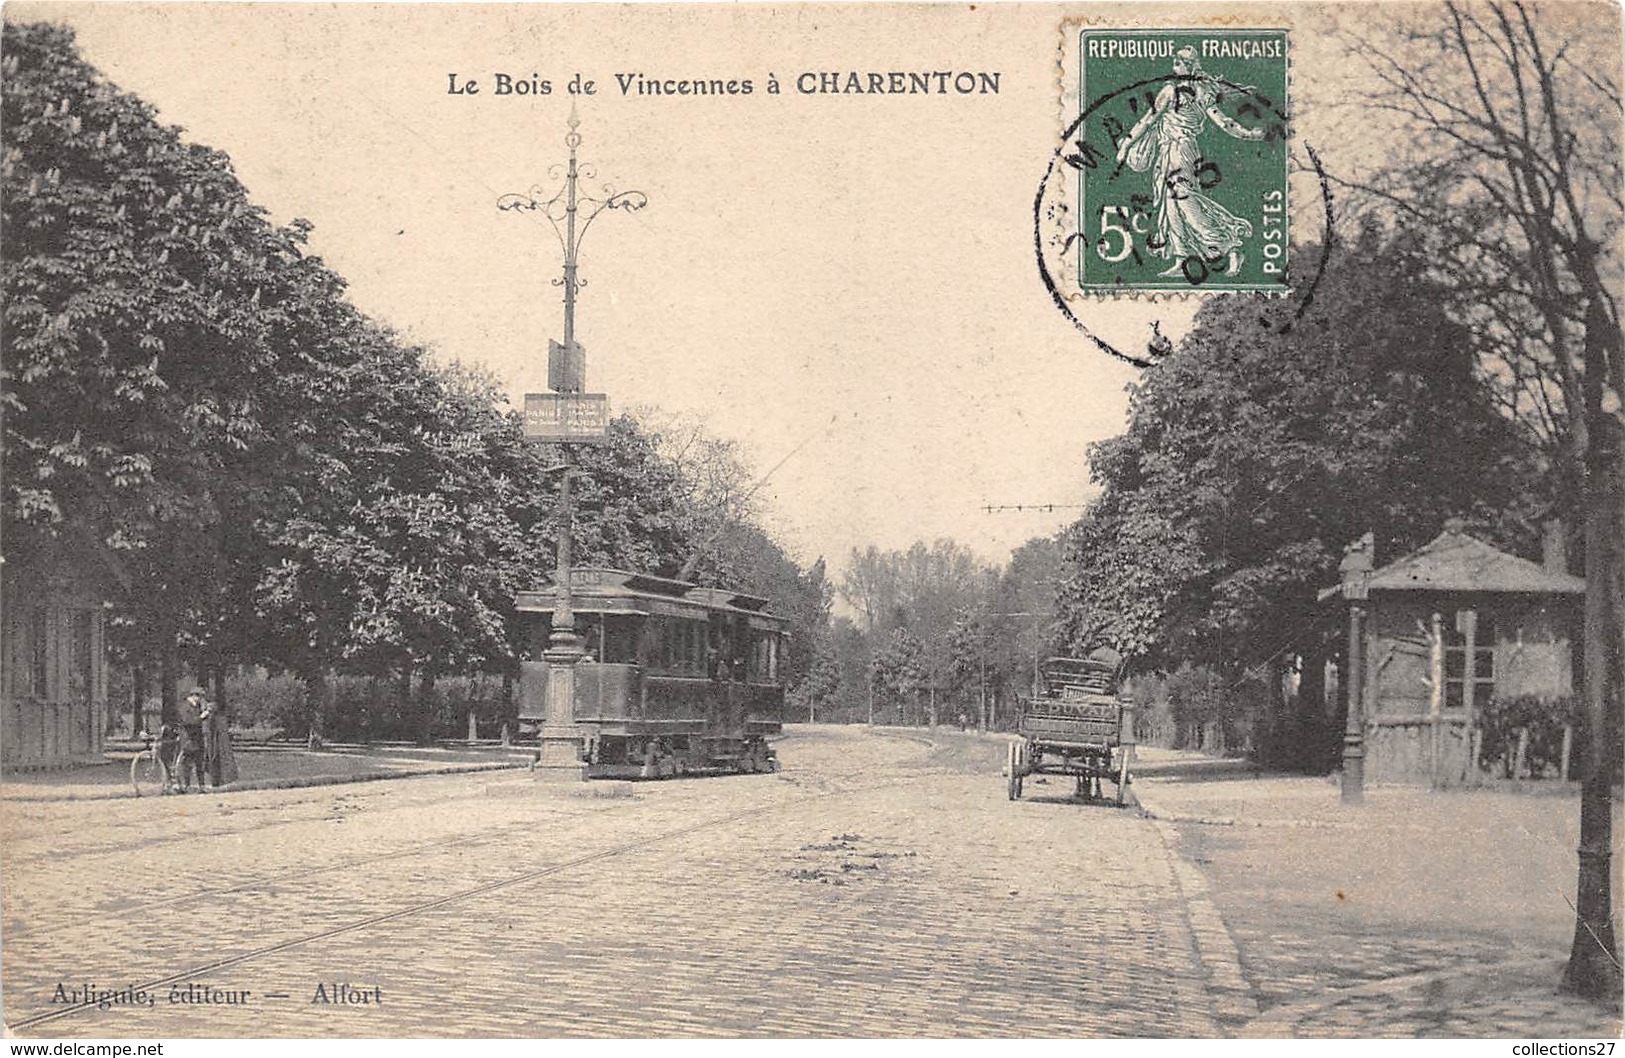 94-CHARENTON- LE BOIS DE VINCENNES A CHARENTON - Charenton Le Pont